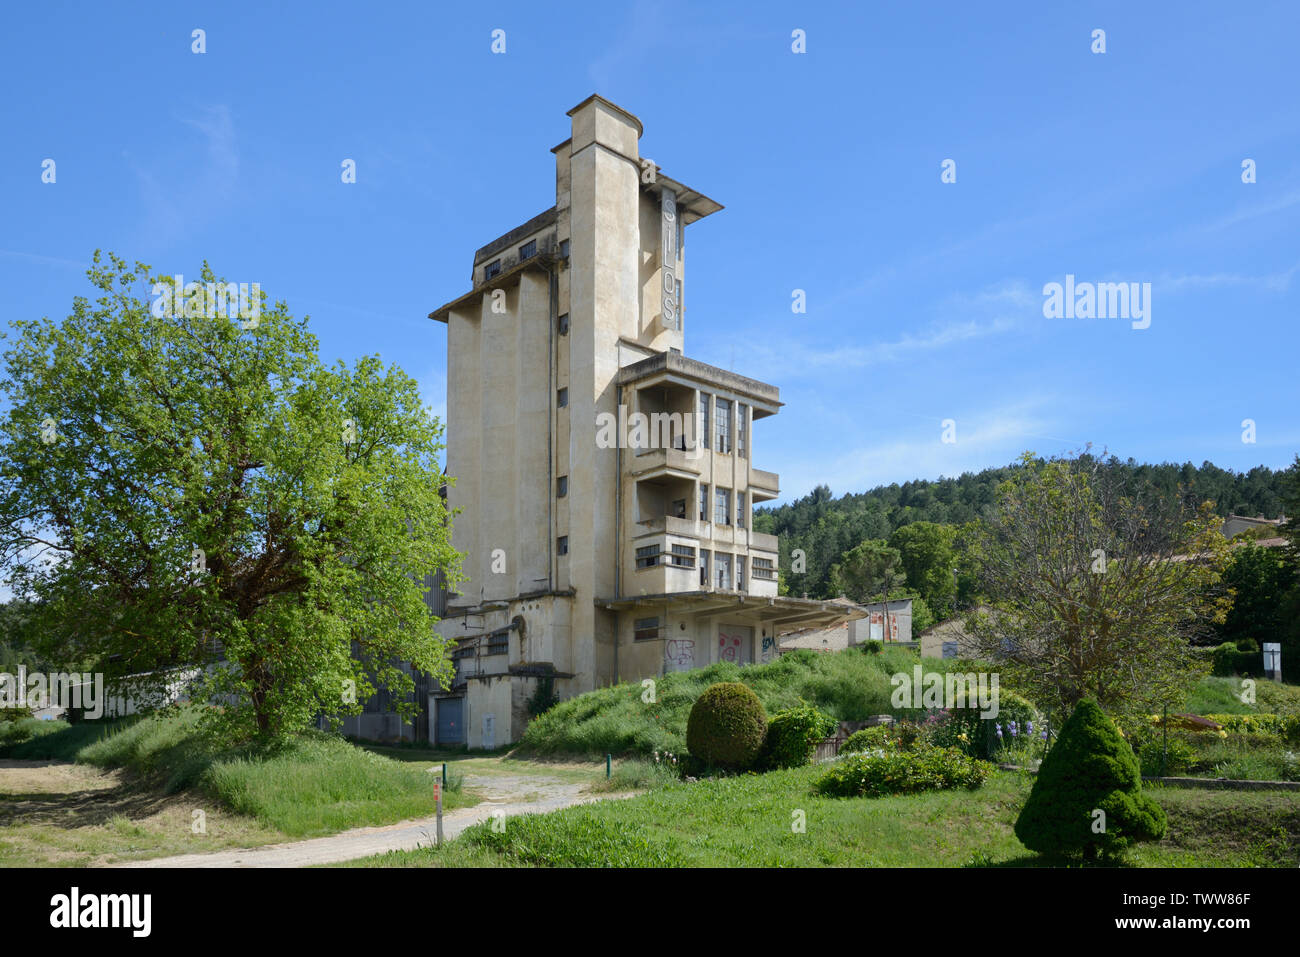 Abandonné et vacants silo à grains, construit 1937-1938, maintenant un bâtiment classé, riez, Alpes de Haute Provence Provence France Banque D'Images